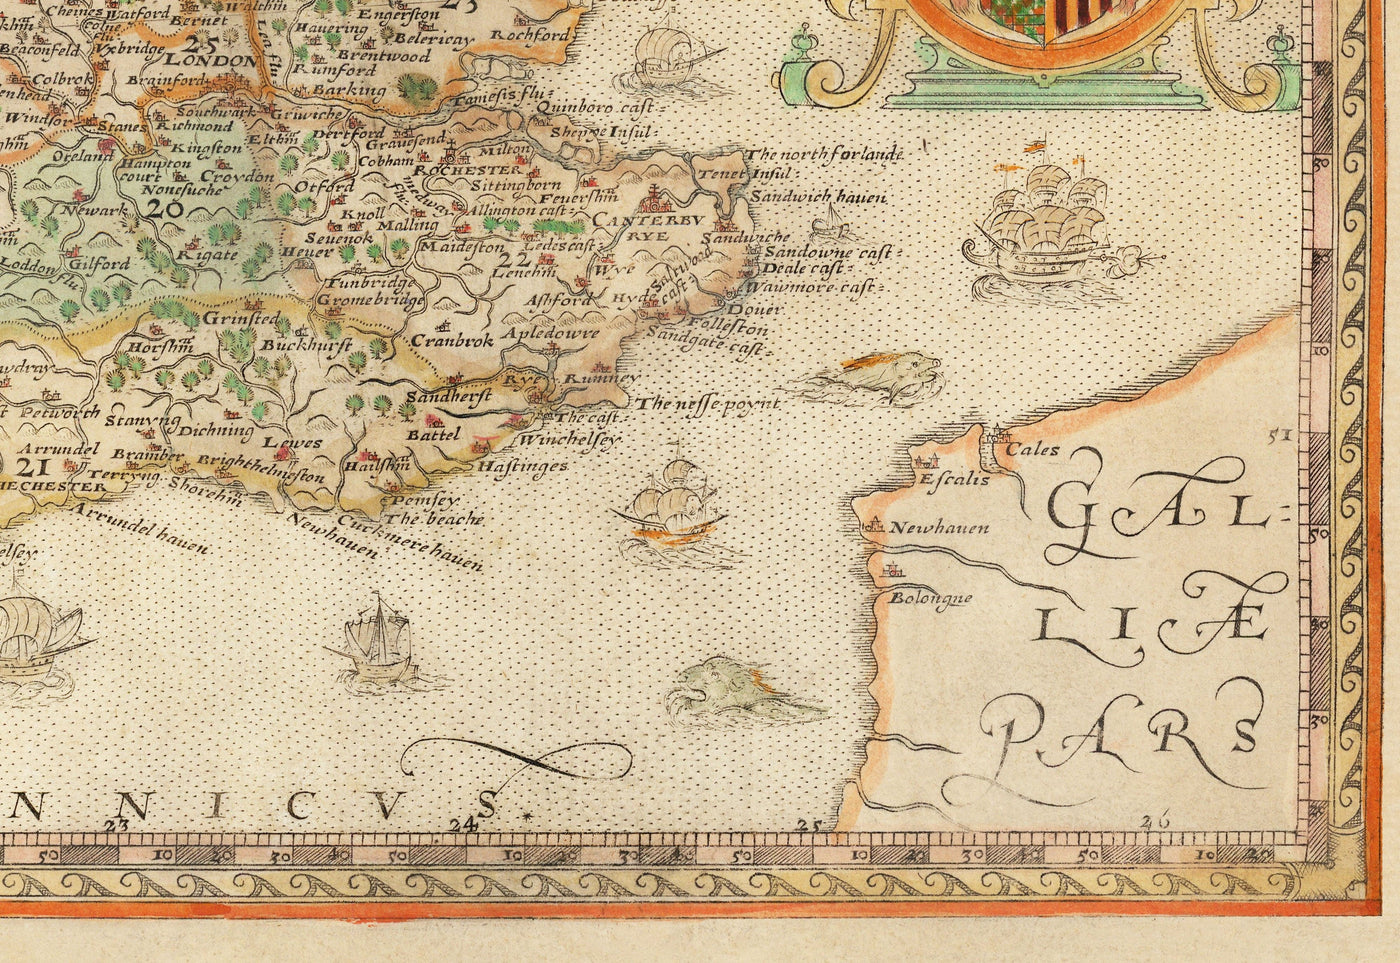 Ancienne carte d'Angleterre & Pays de Galles, 1579 par Christopher Saxton - Première carte imprimée des îles britanniques